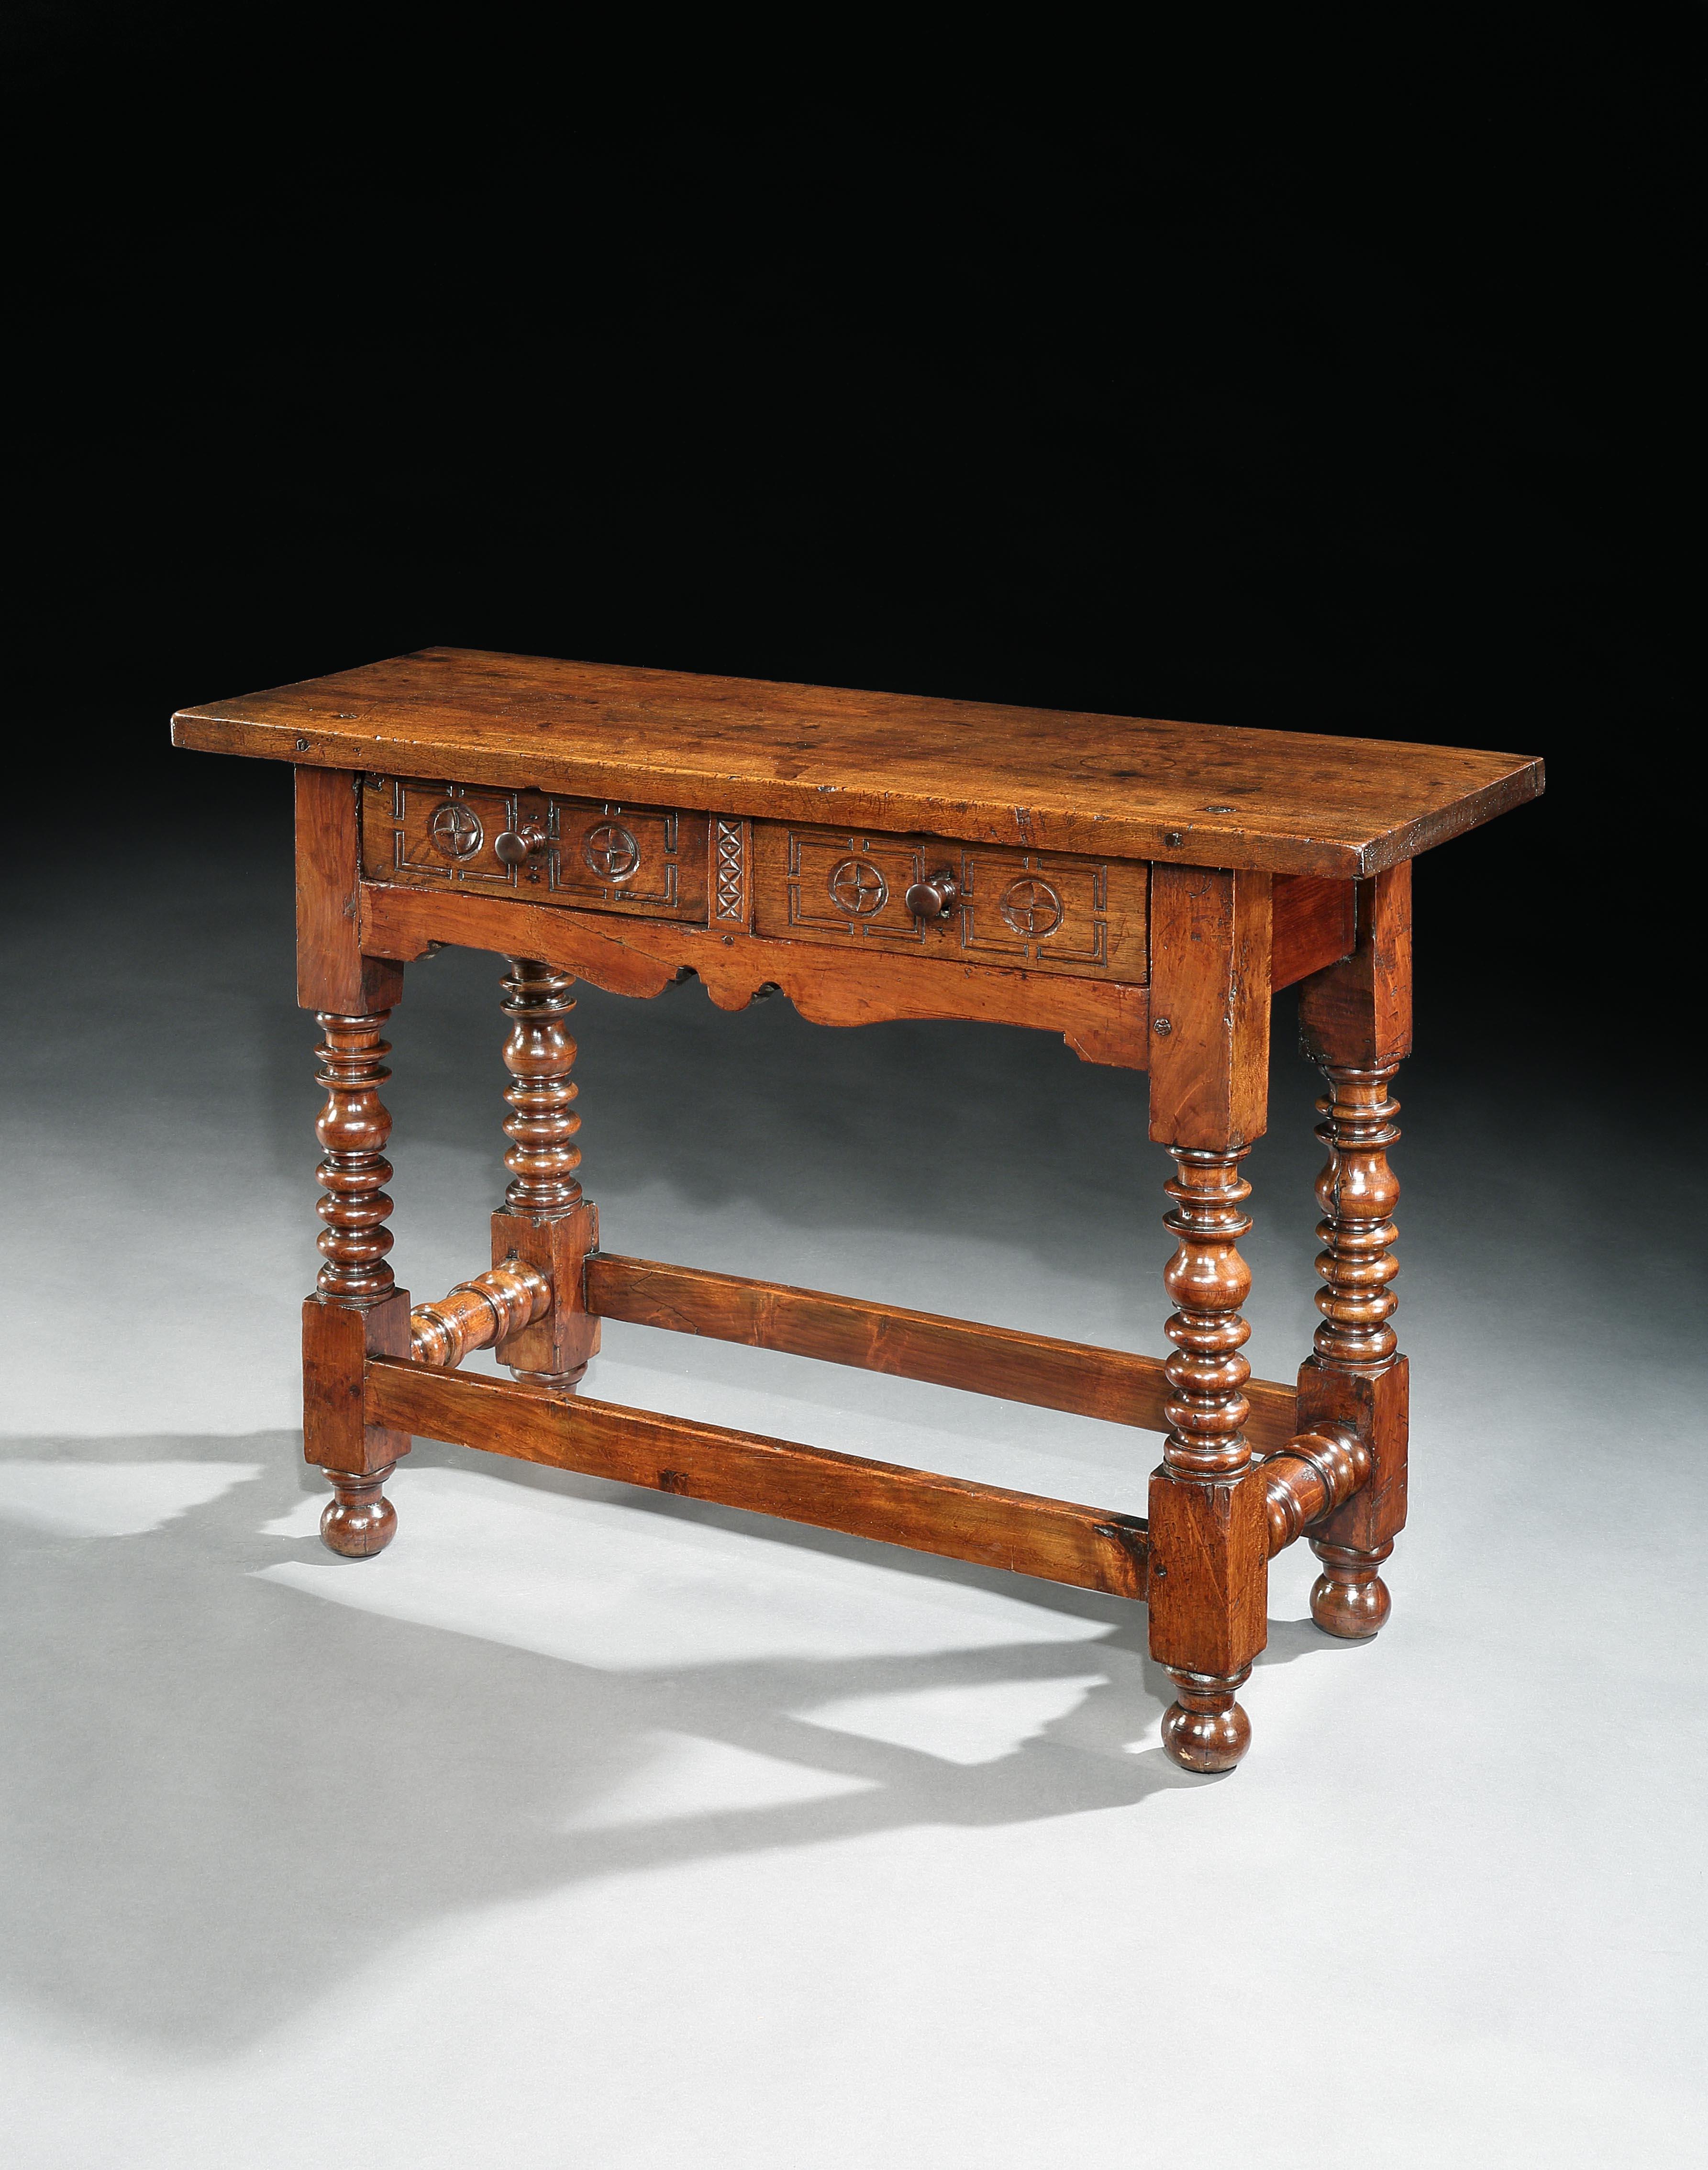 Dieser charaktervolle Tisch hat die seltene schmale Tiefe von 39 cm. Es ist charakteristisch für spanische Barockmöbel mit einer dicken, einteiligen Platte, einfachen, kühn geschnitzten Ornamenten und kühnen Drechselarbeiten. Es hat eine